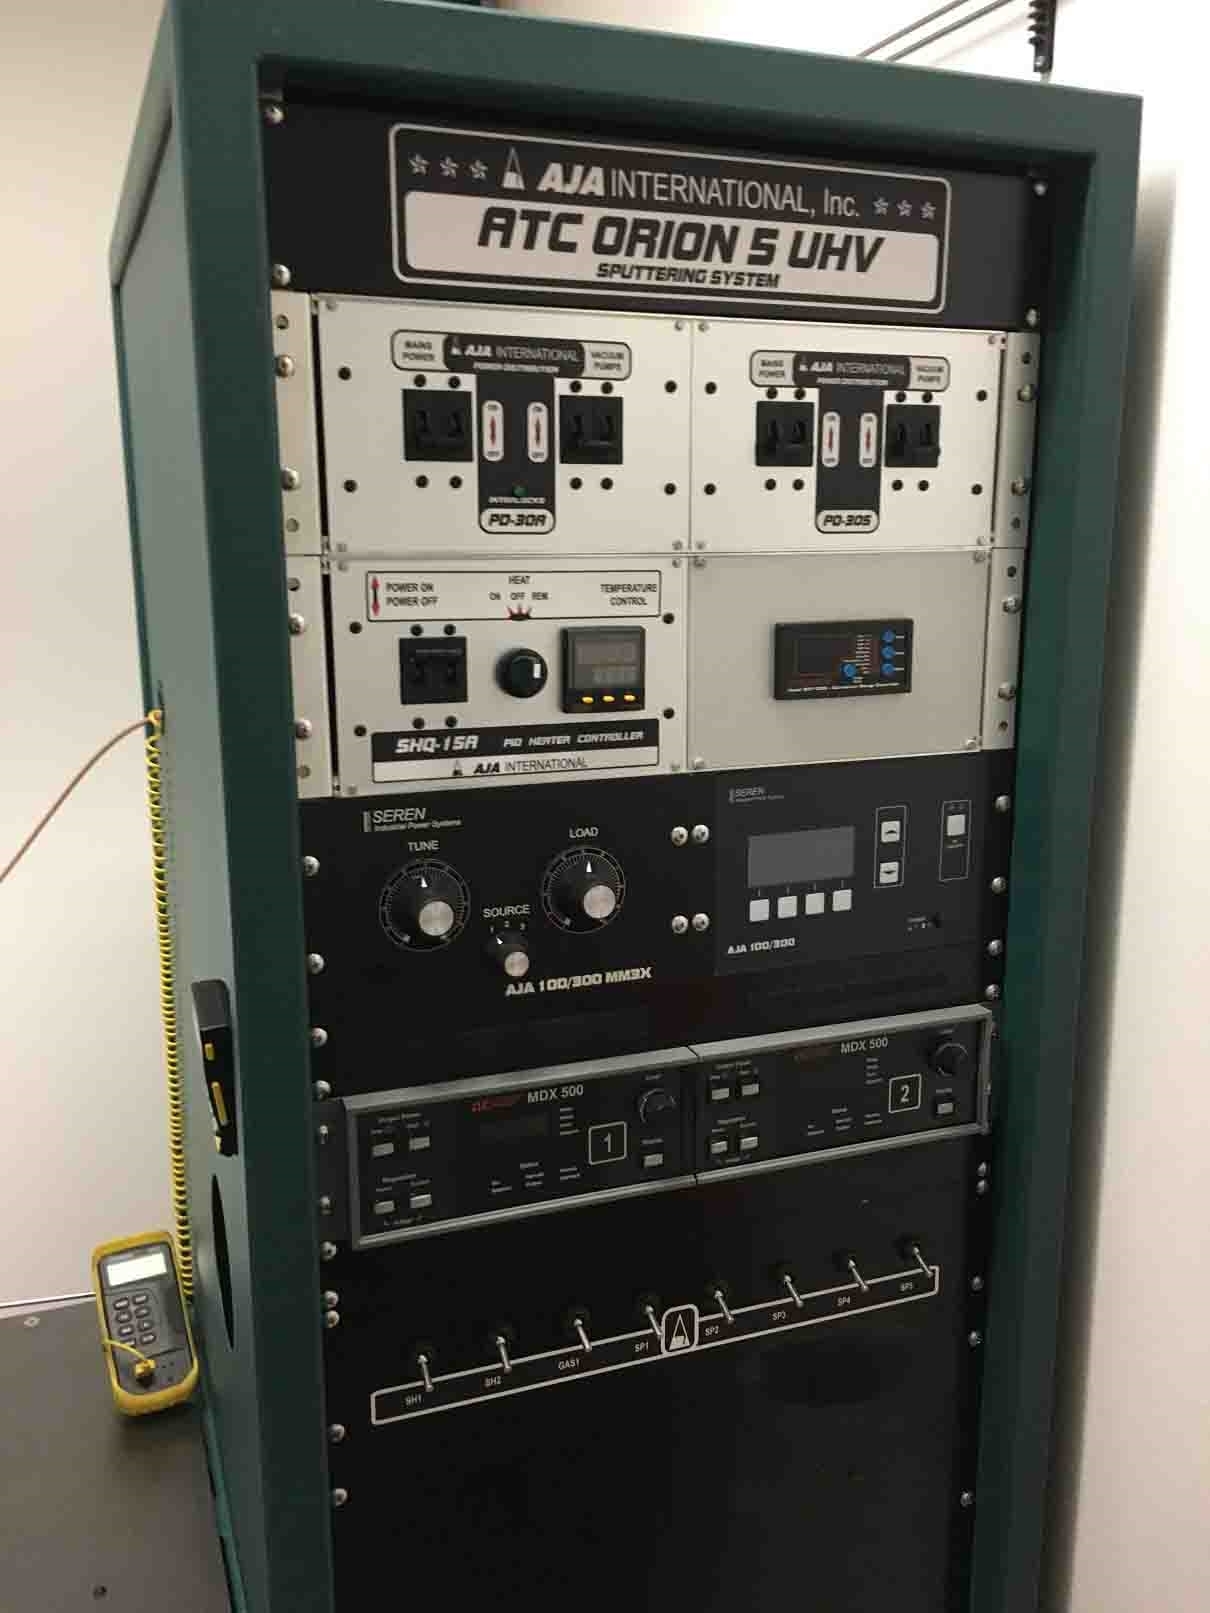 圖為 已使用的 AJA ATC Orion 5 UHV 待售